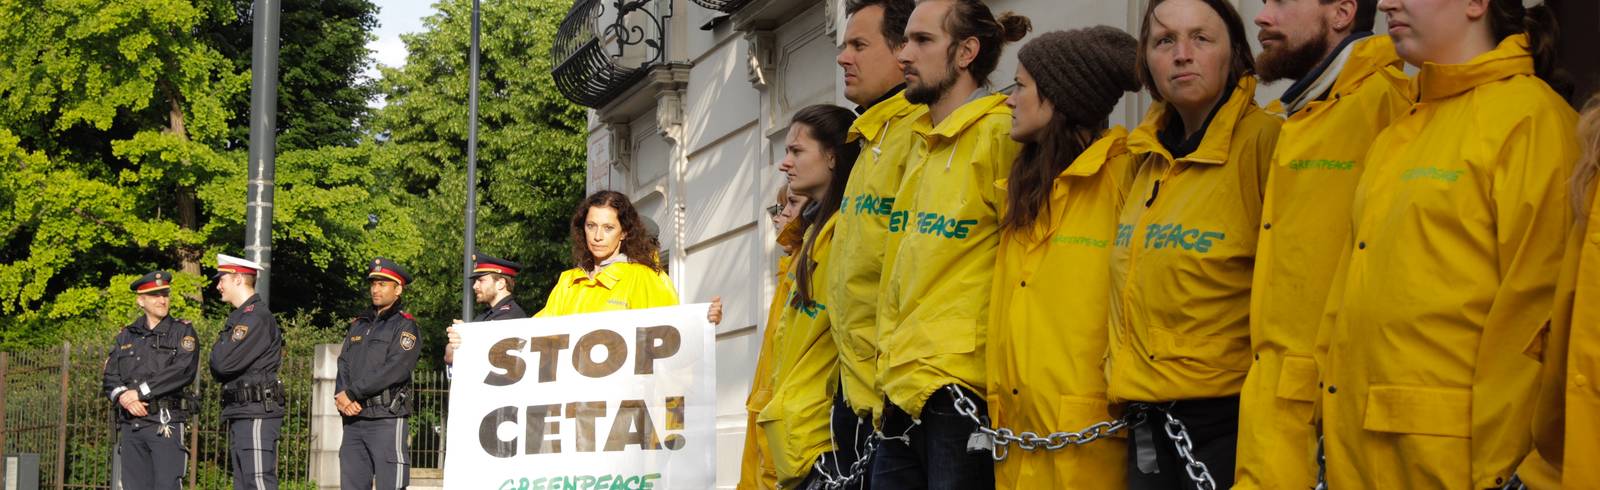 CETA: Protest vor Kanzleramt